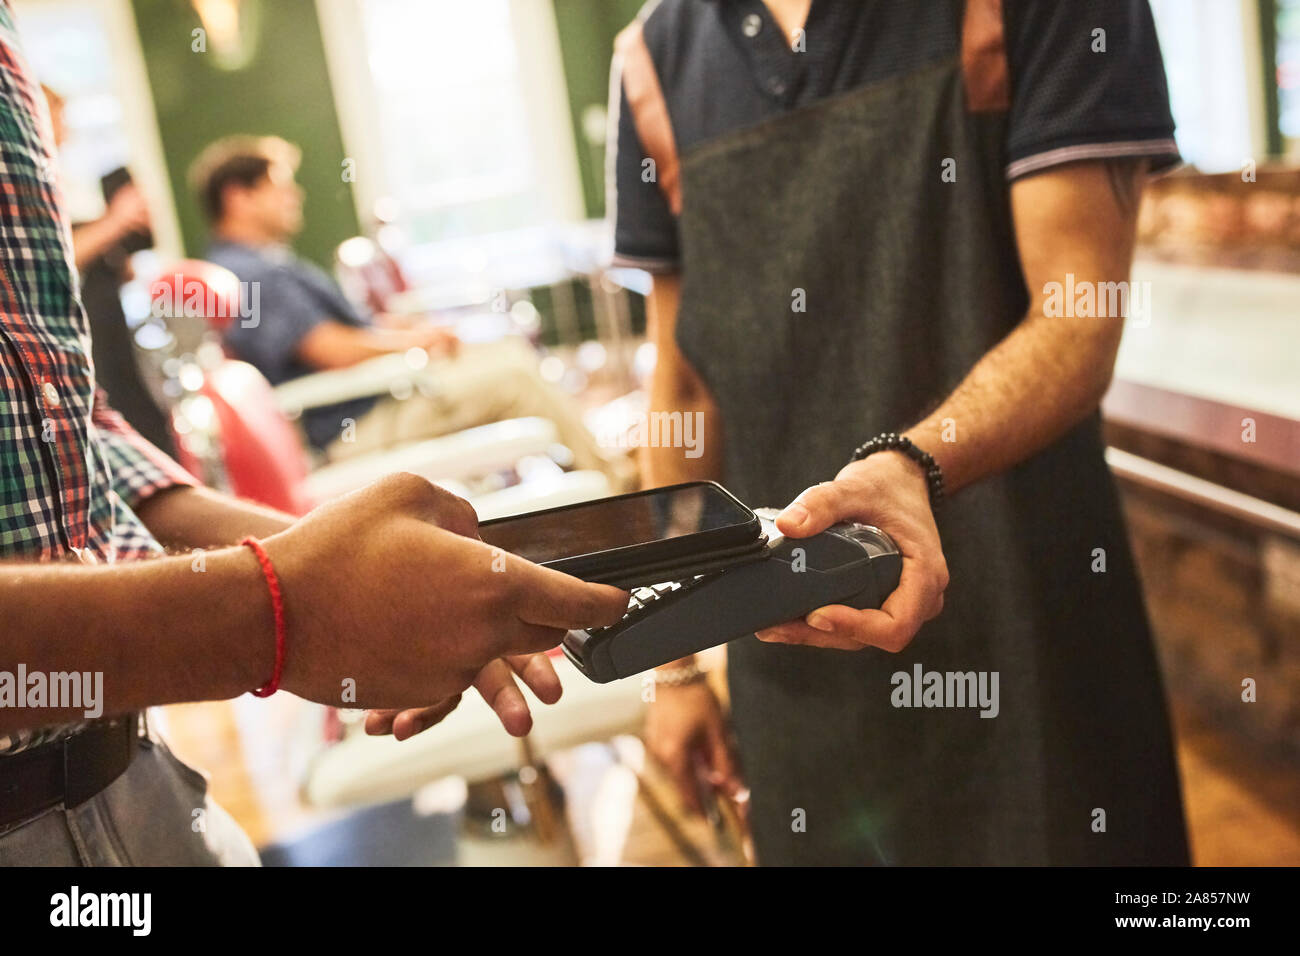 Paiement client masculin coiffure avec smart phone dans ce type de paiement sans contact Banque D'Images